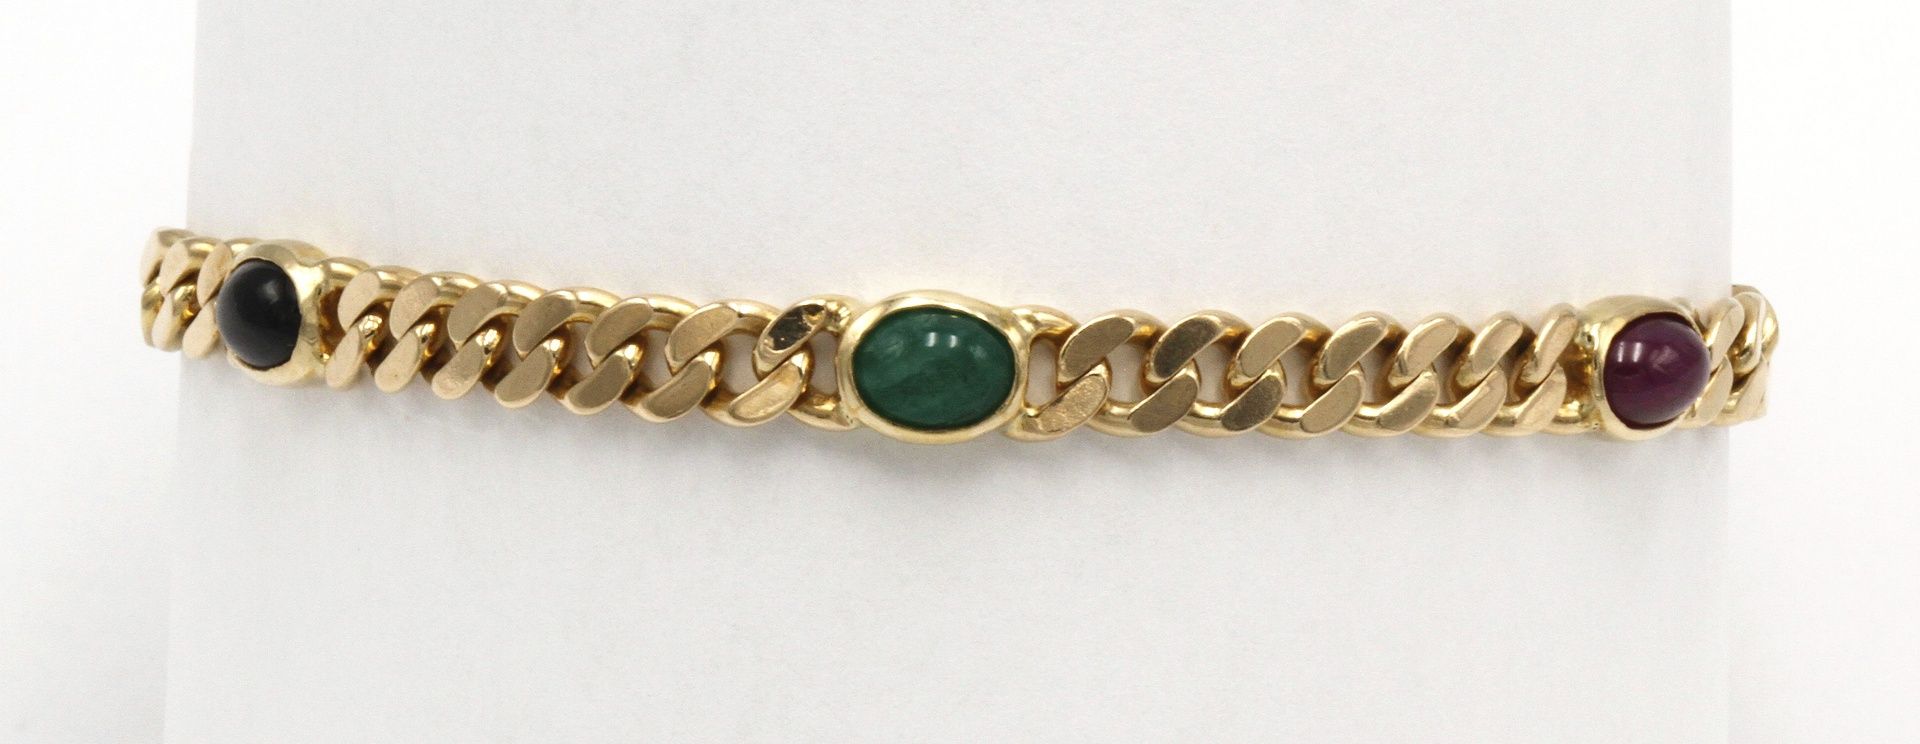 Armband mit Saphir, Rubin und Smaragd585/- Gelbgold, zwei ca. 1,3 ct Saphire, zwei ca. 1,3 ct - Bild 4 aus 4